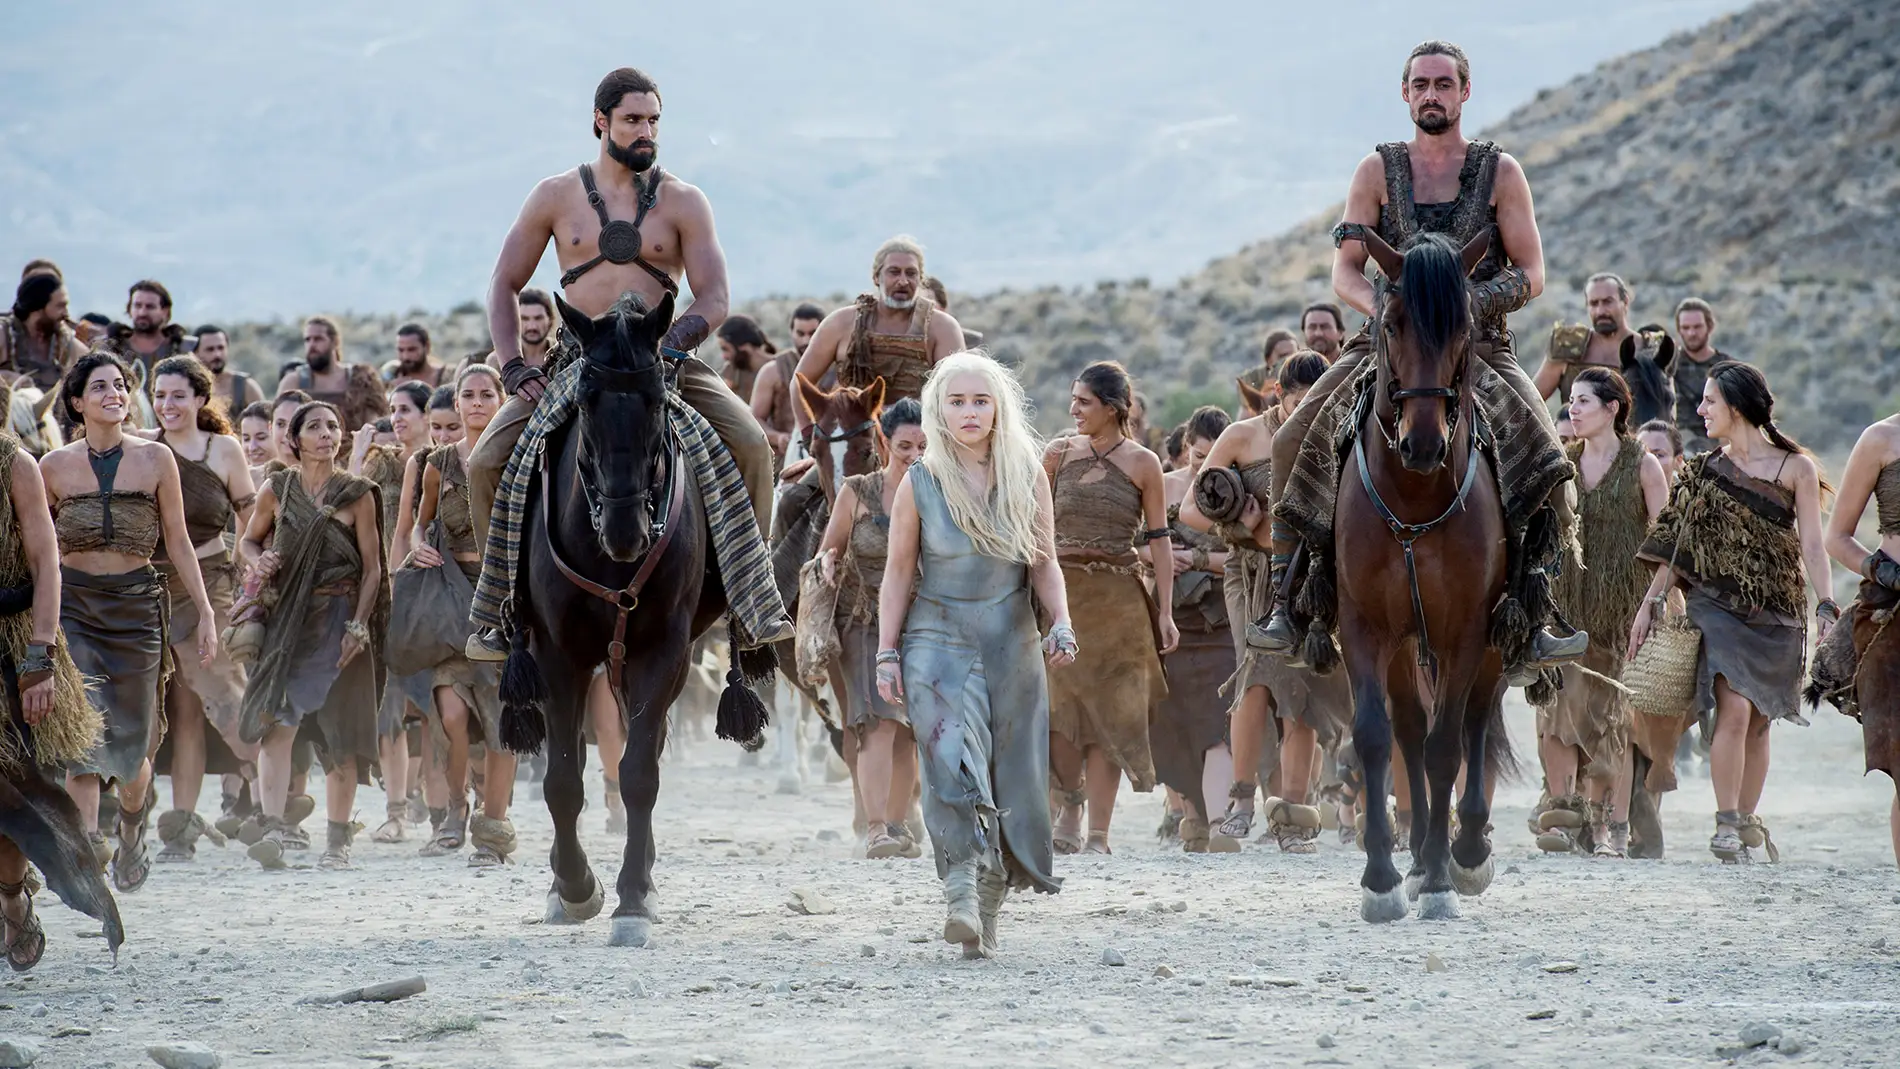 Daenerys Targaryen de 'Juego de Tronos'